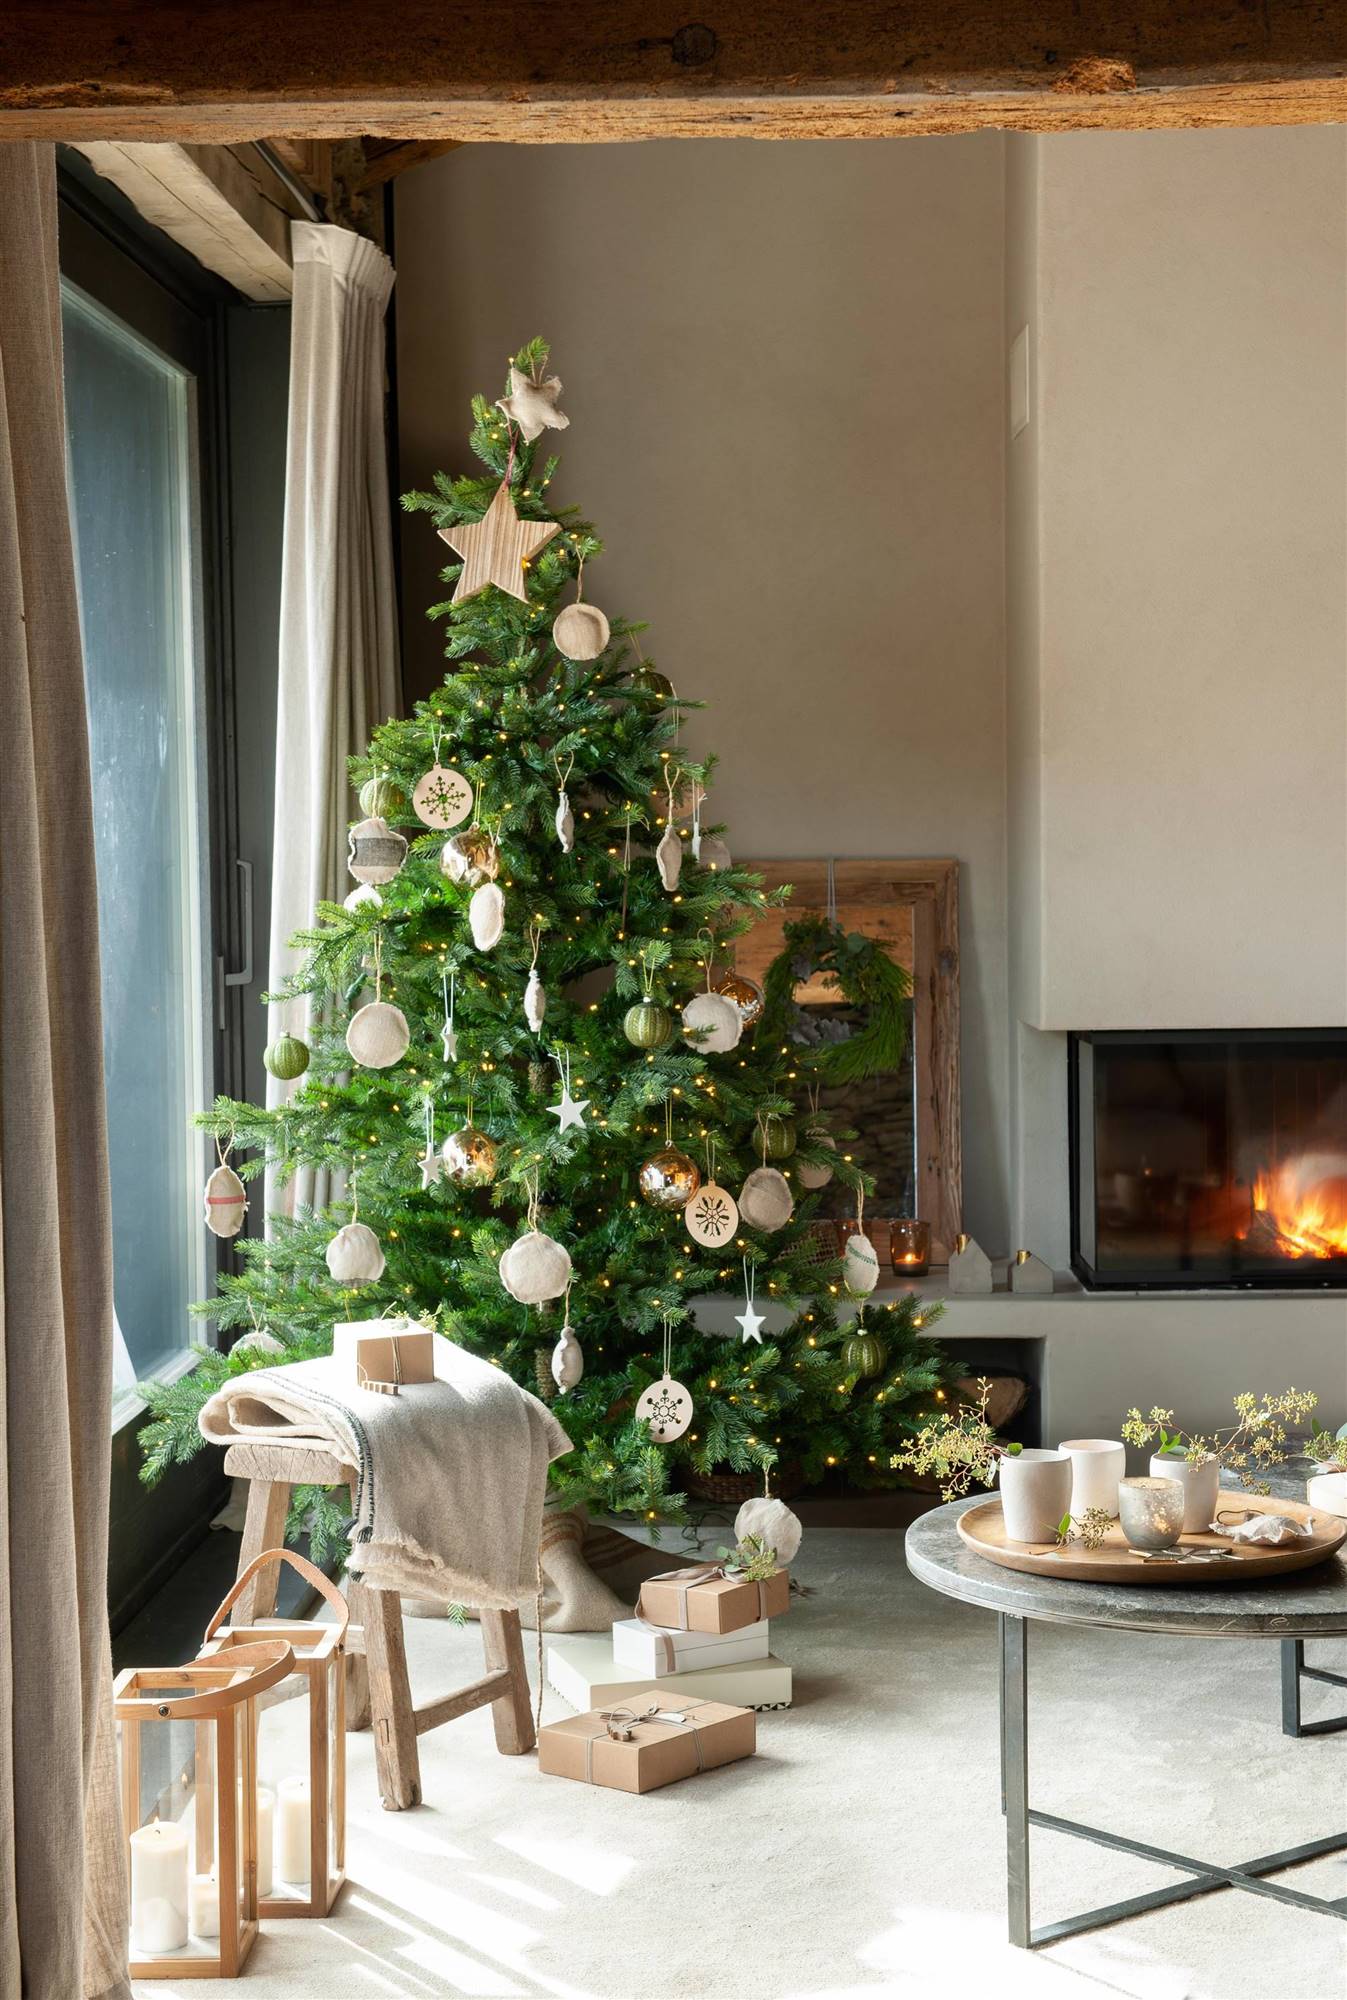 Salón con árbol de Navidad decorado con adornos al lado de la chimenea.